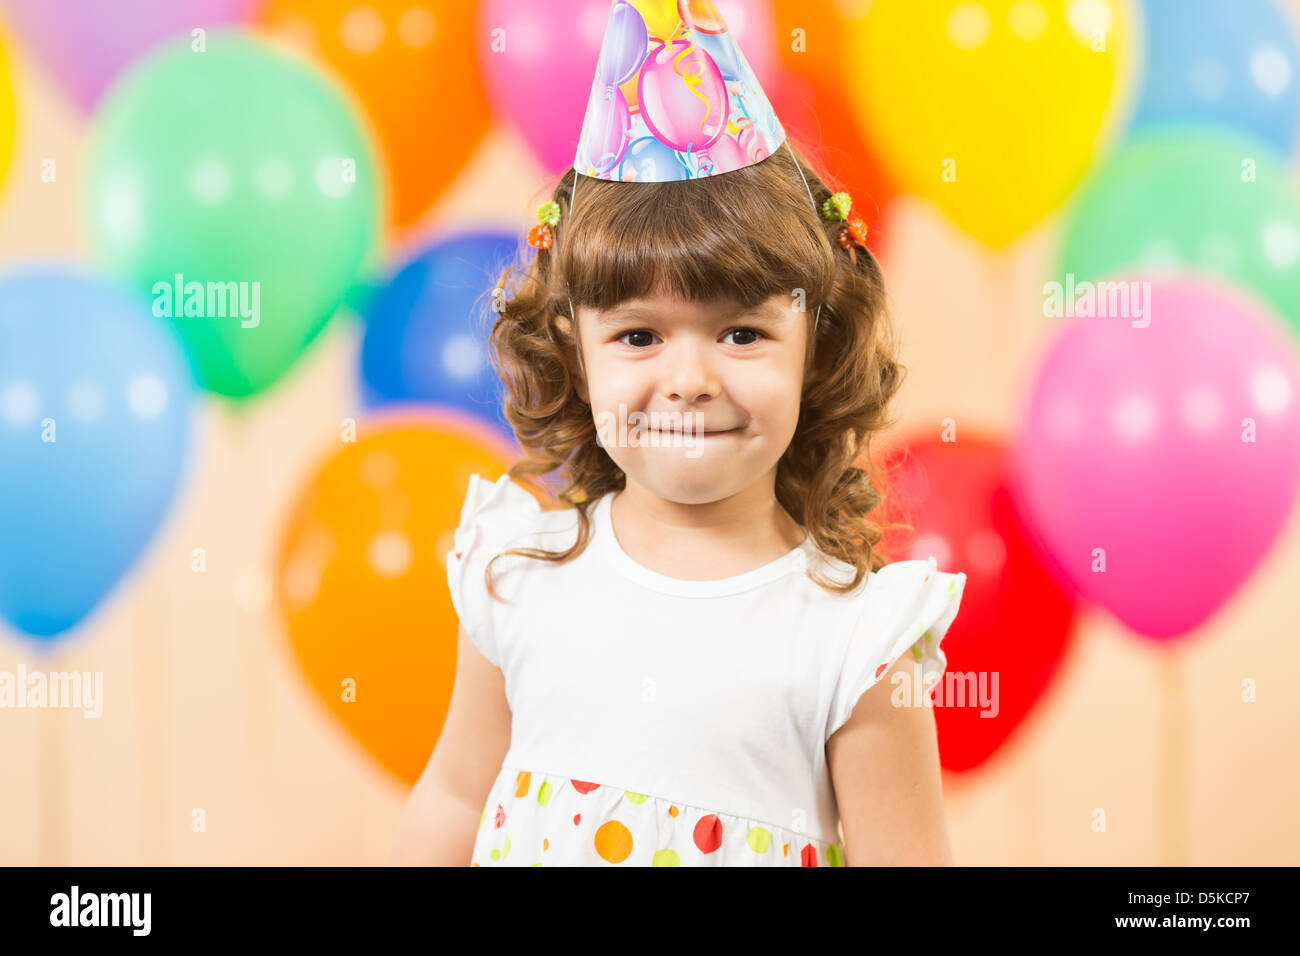 joyful kid girl on birthday party Stock Photo